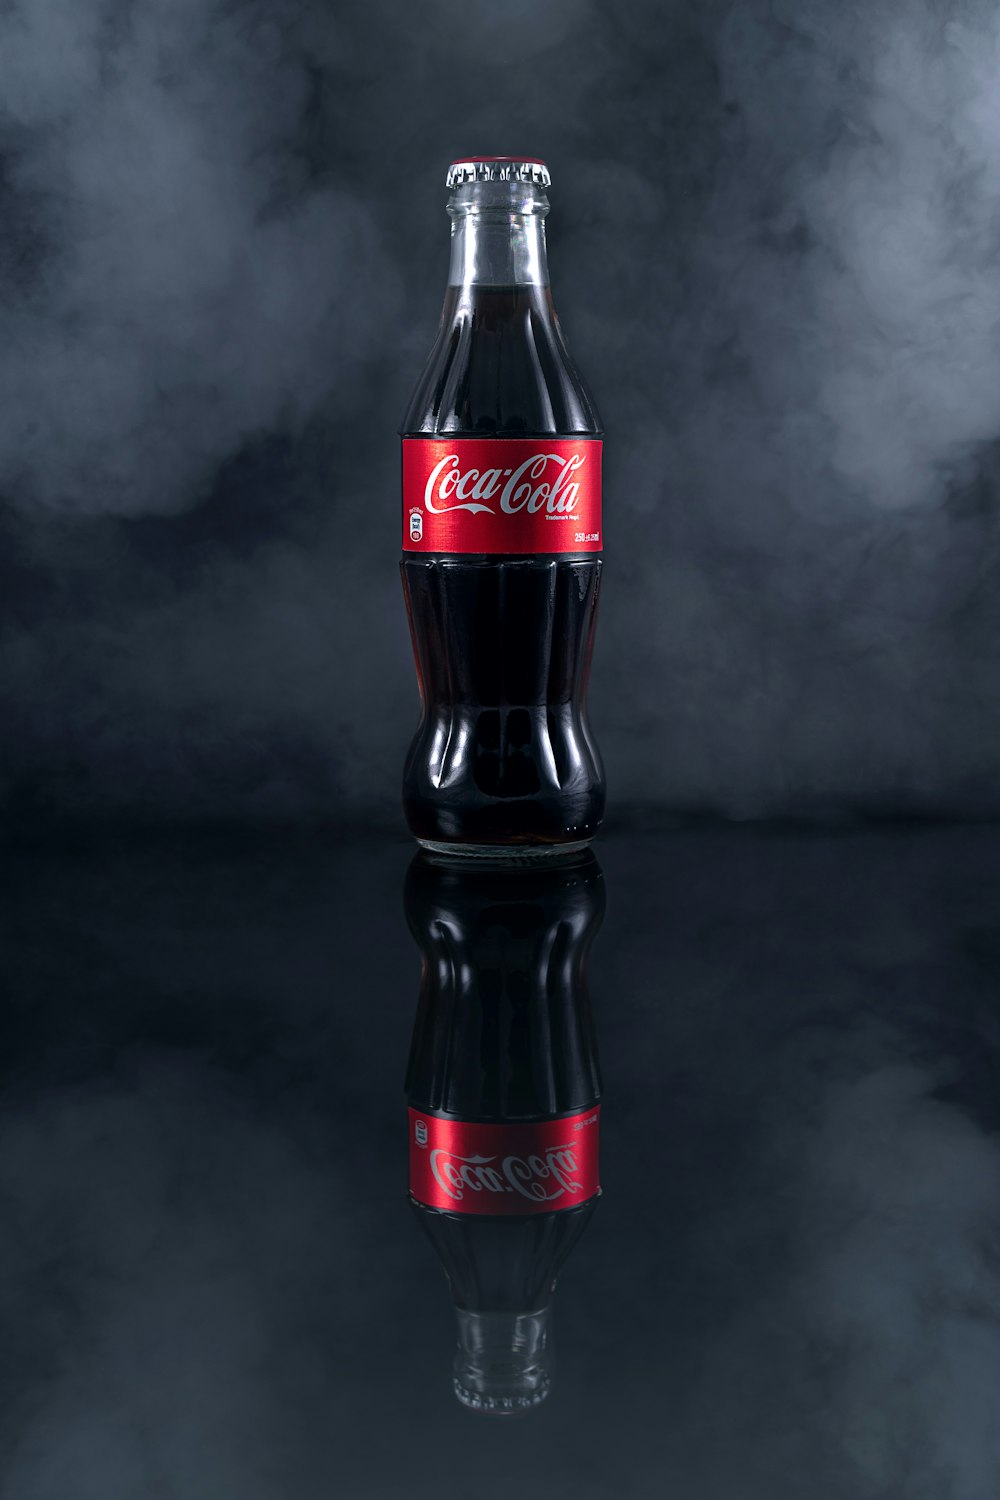 bouteille de coca cola sur table noire